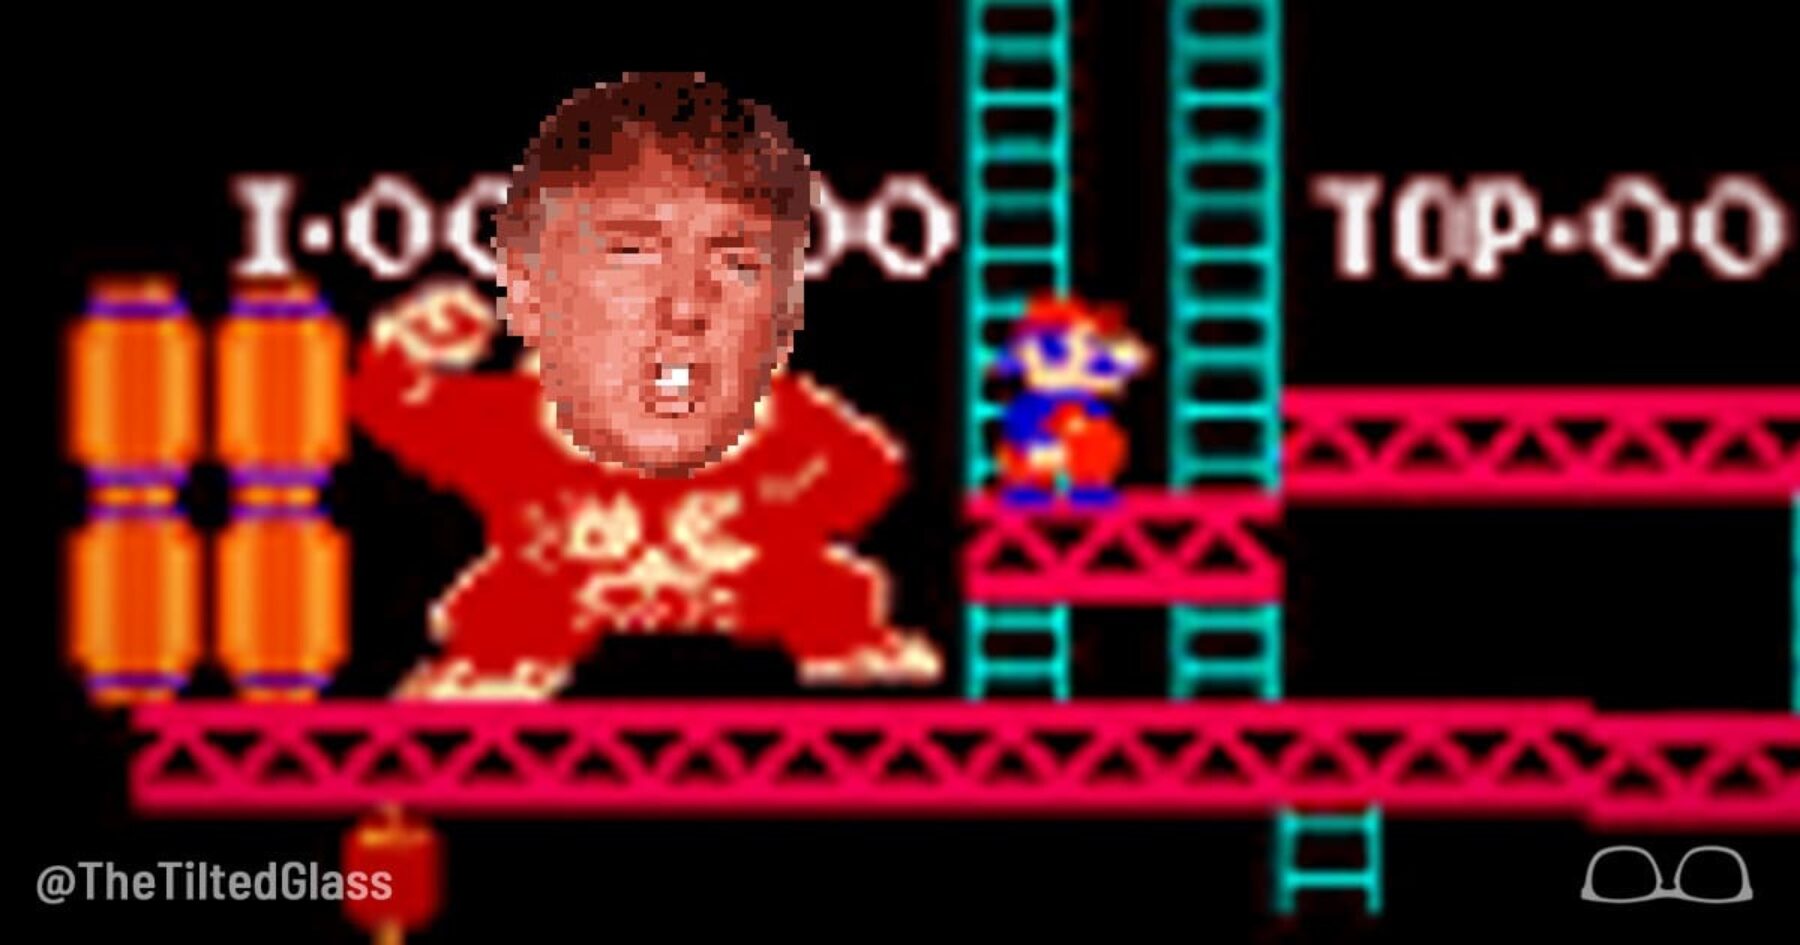 Trump Breaks High Score in Donkey Kong